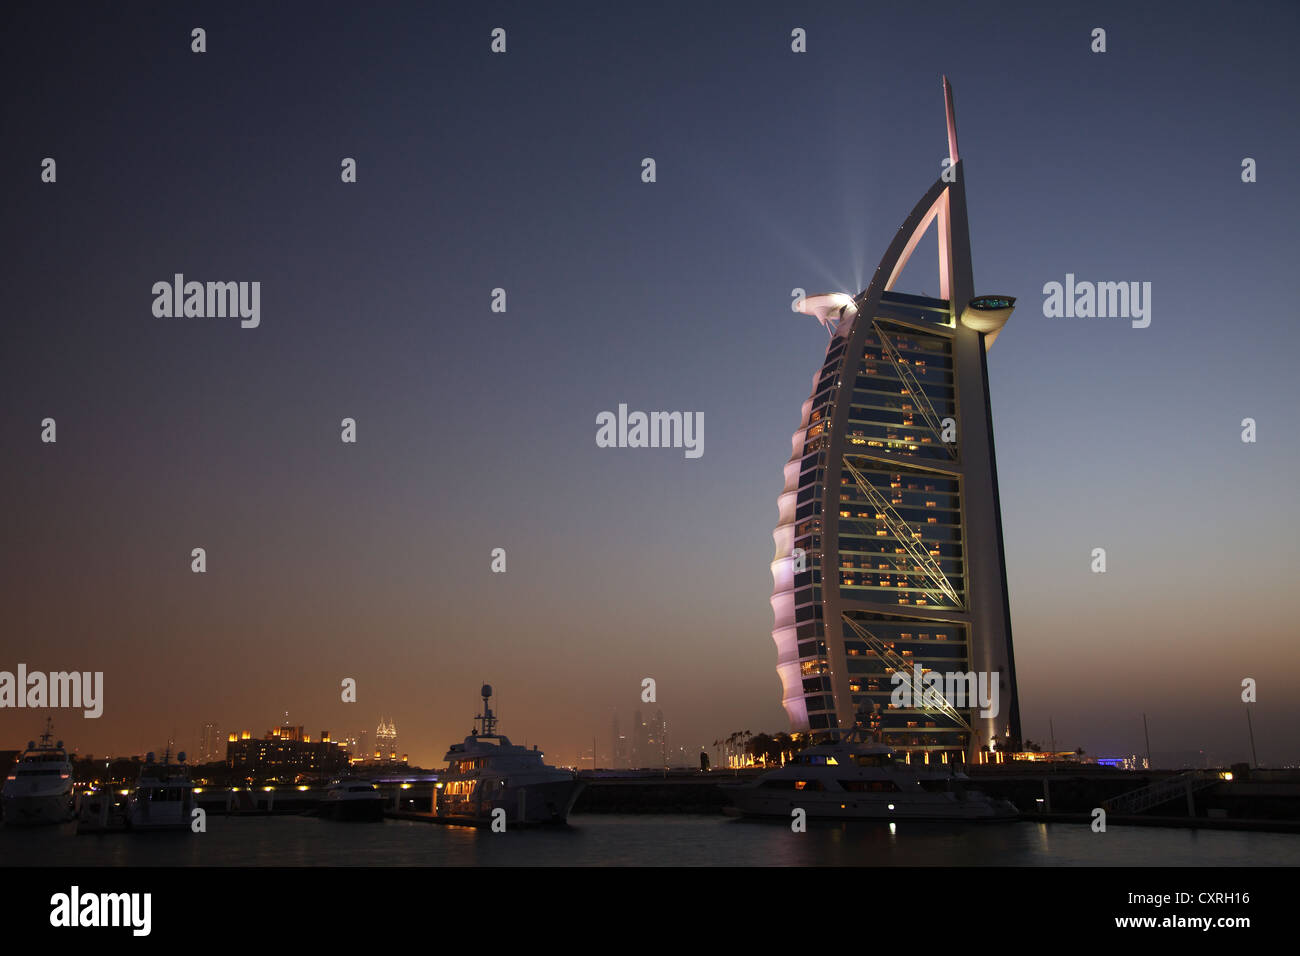 Burj Al Arab hôtel de luxe dans la nuit, la plage de Jumeirah, Dubai, Émirats arabes unis, au Moyen-Orient, en Asie Banque D'Images